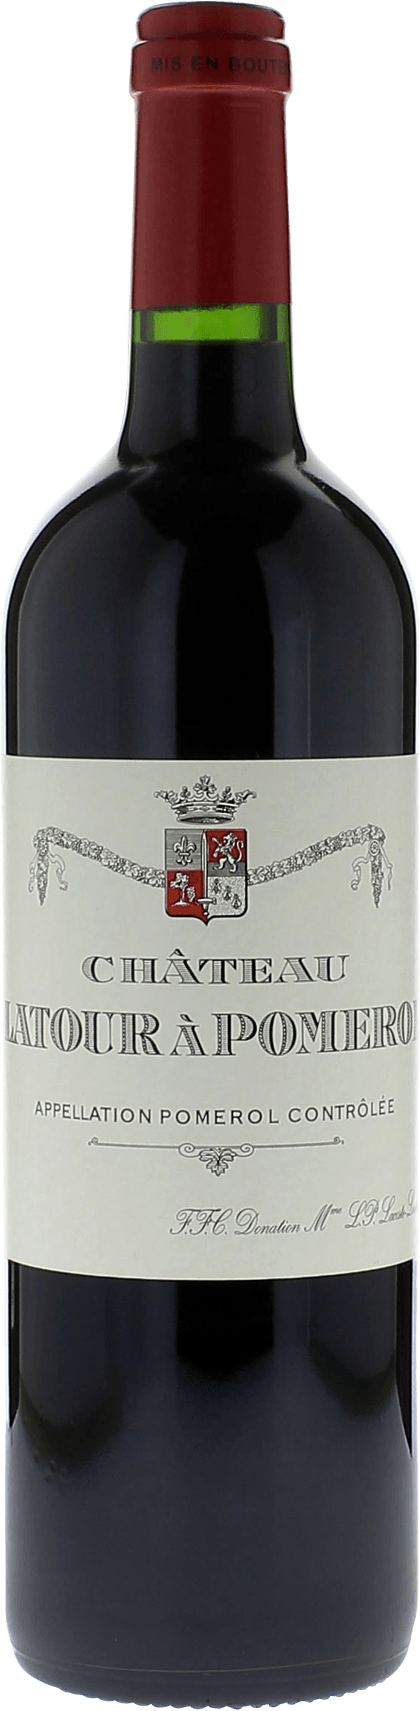 Latour  pomerol 1995  Pomerol, Bordeaux rouge